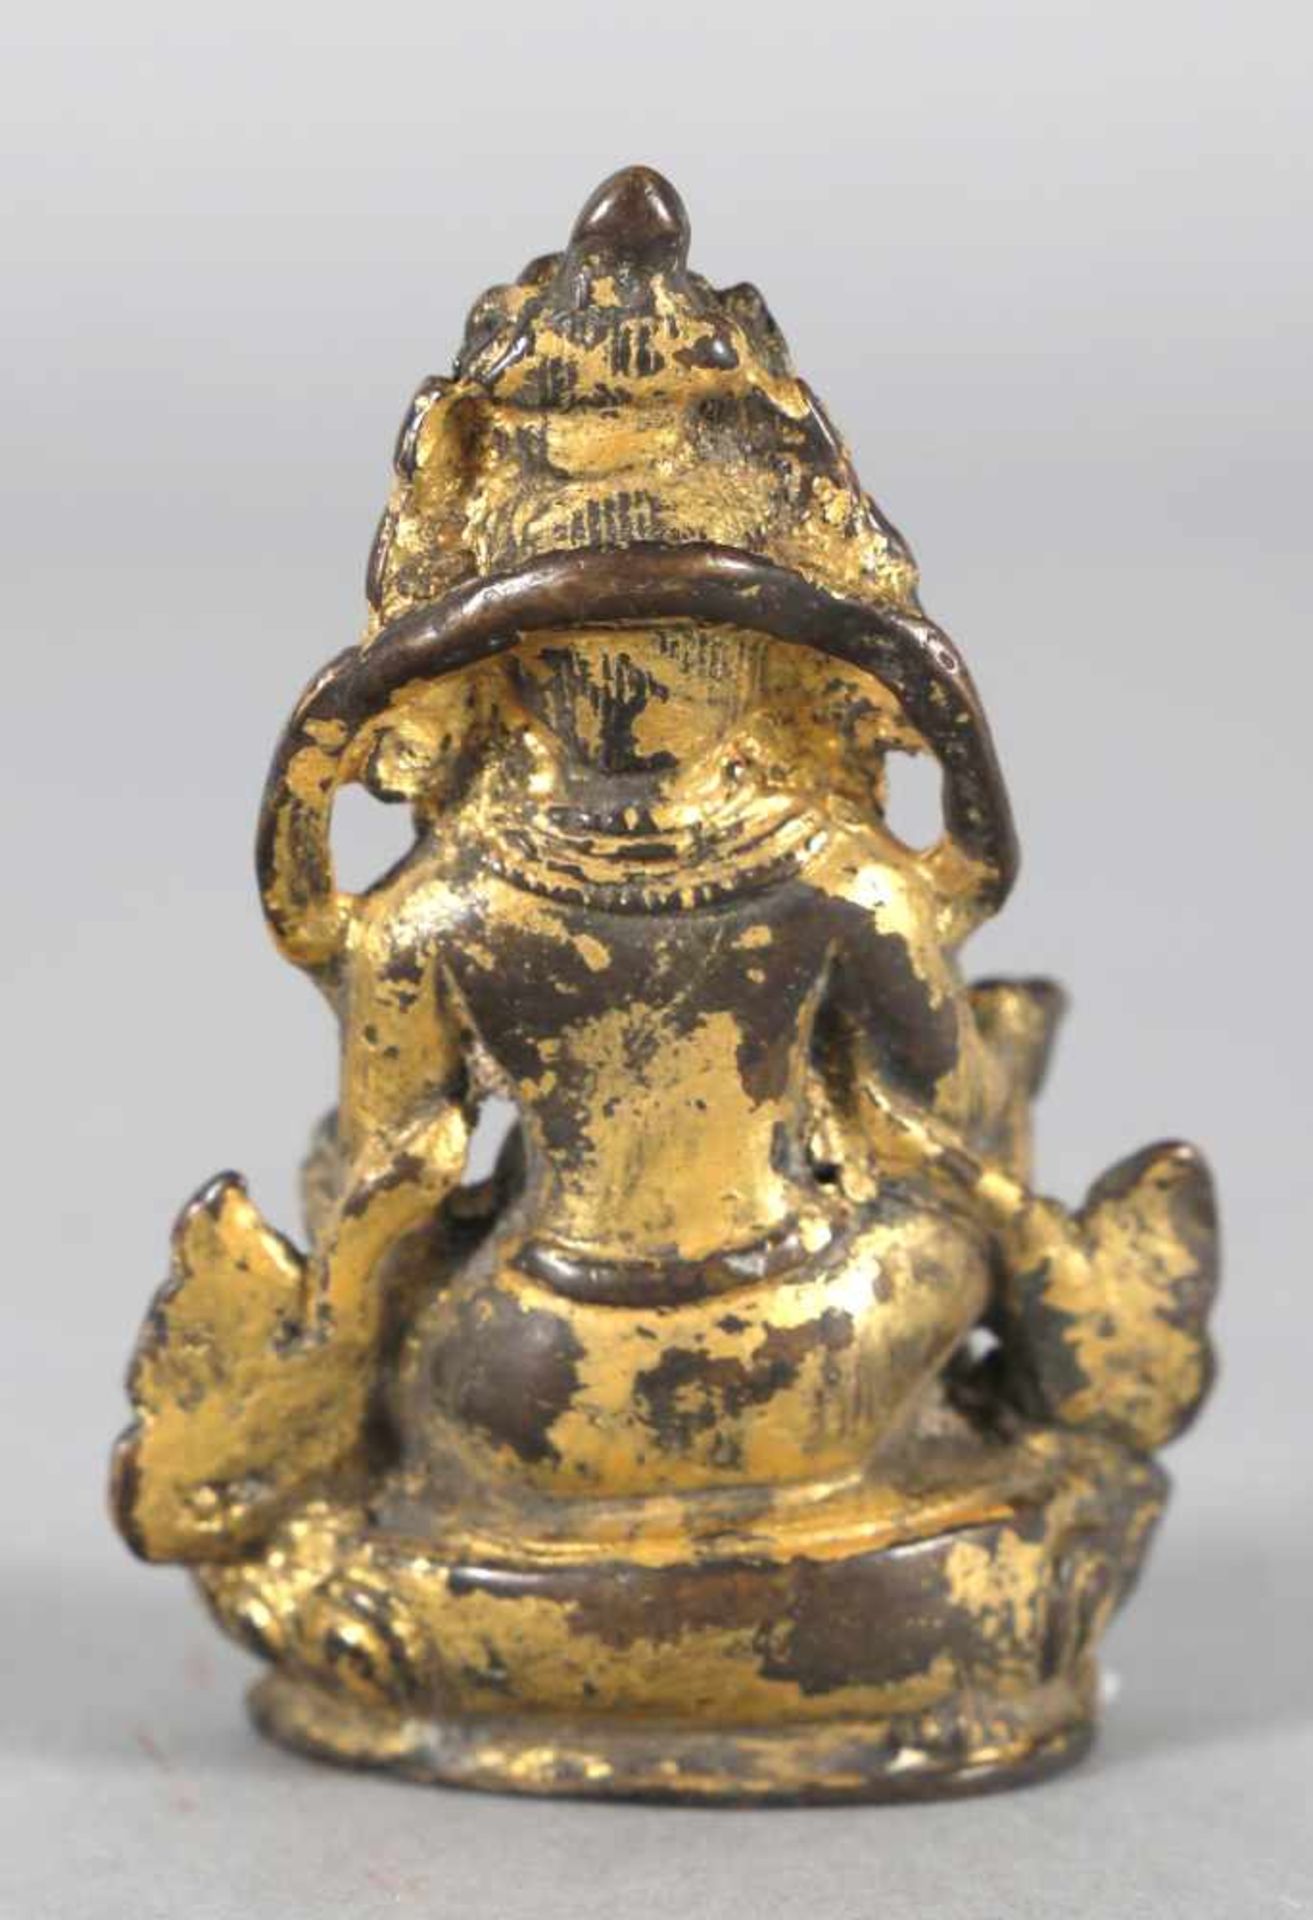 Skulptur eines thronenden Buddhas, vielleicht des Matakala, China/Tibet, wohl 18. Jh.Bronze - Bild 2 aus 2